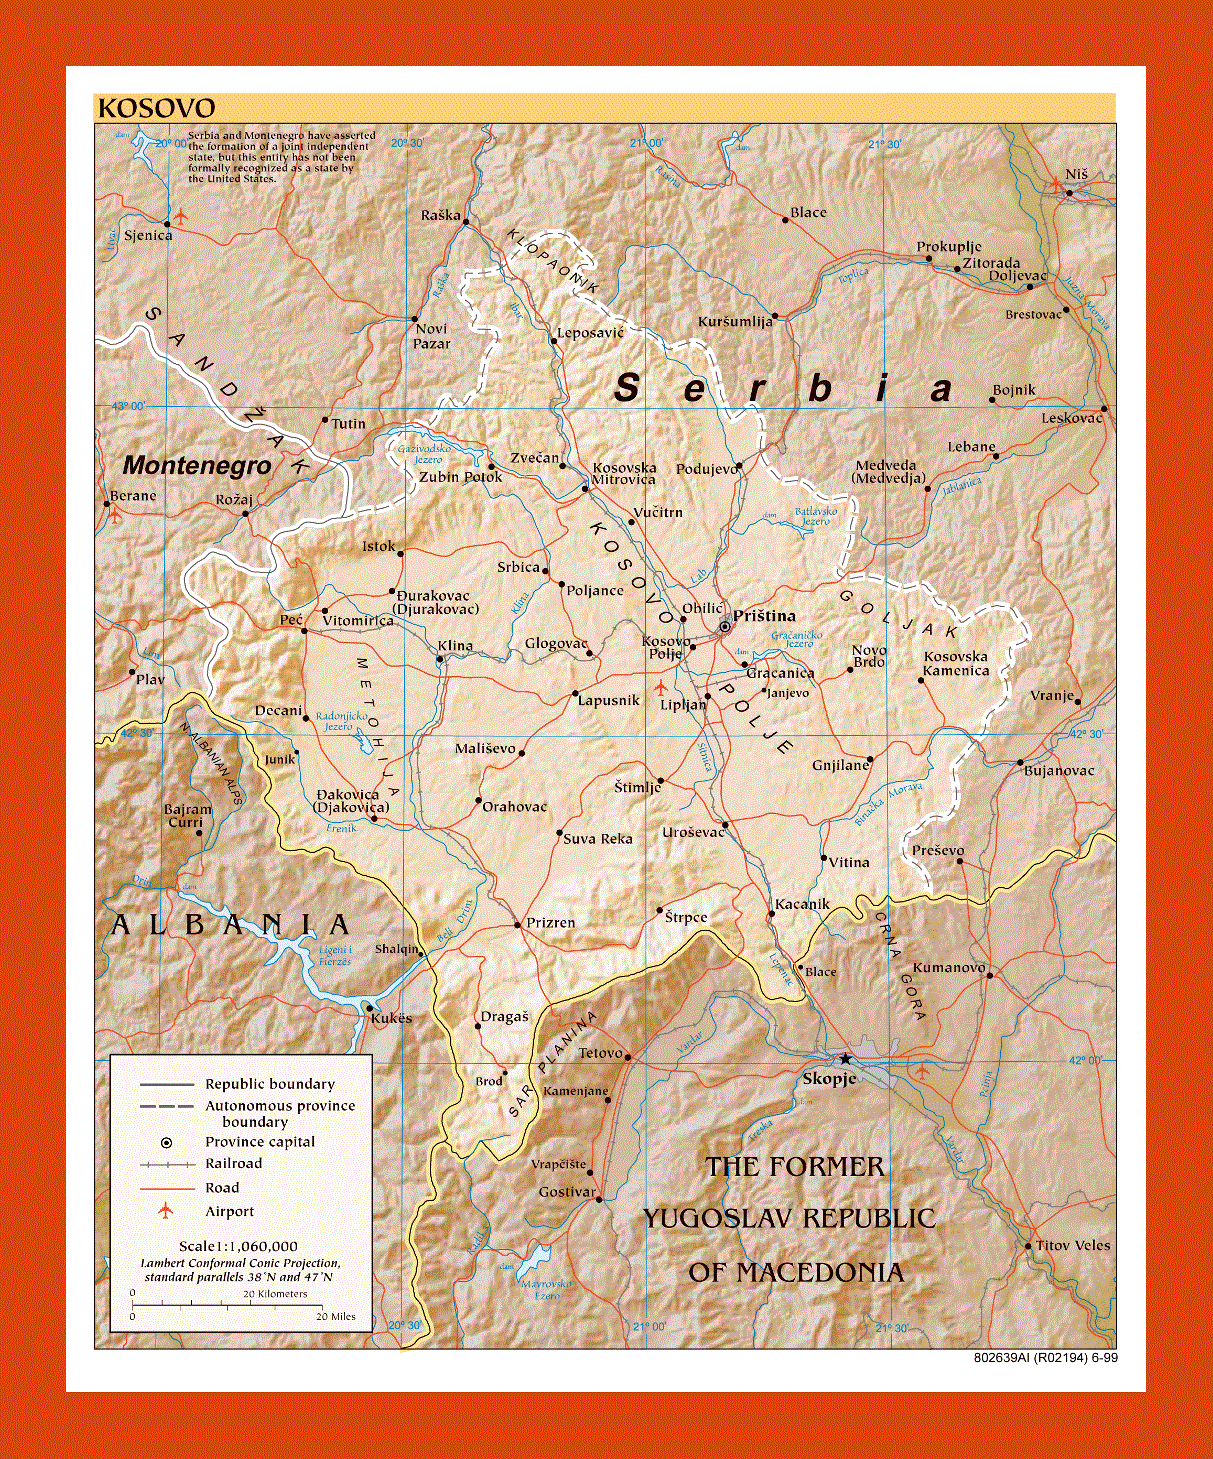 Political map of Kosovo - 1999